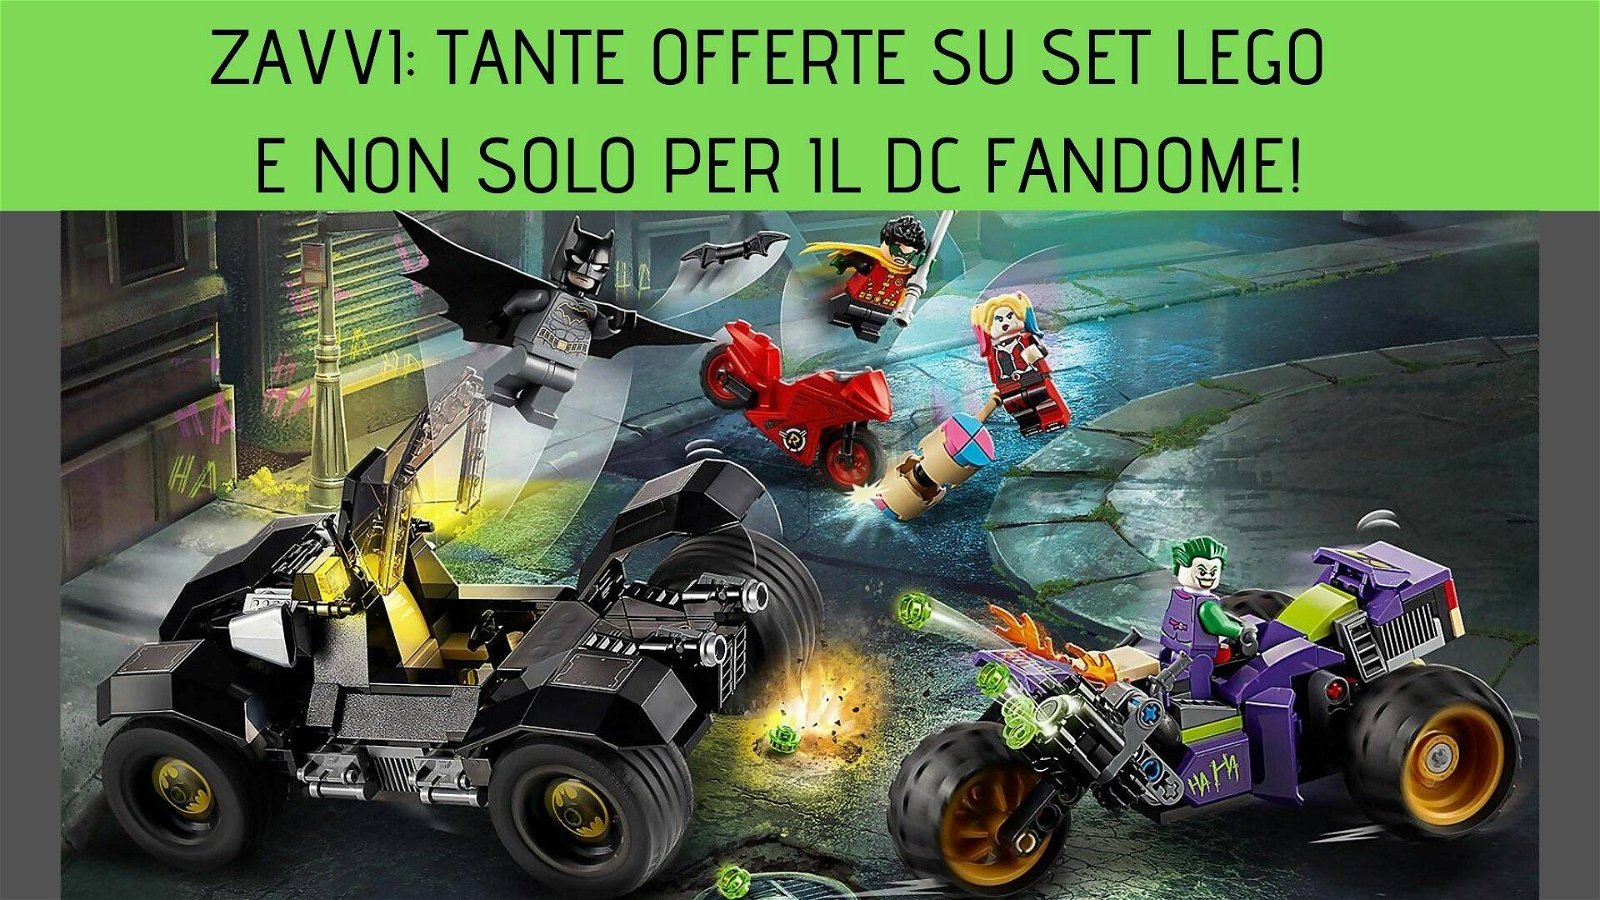 Immagine di Zavvi: tante offerte su set Lego e non solo per il DC Fandome!